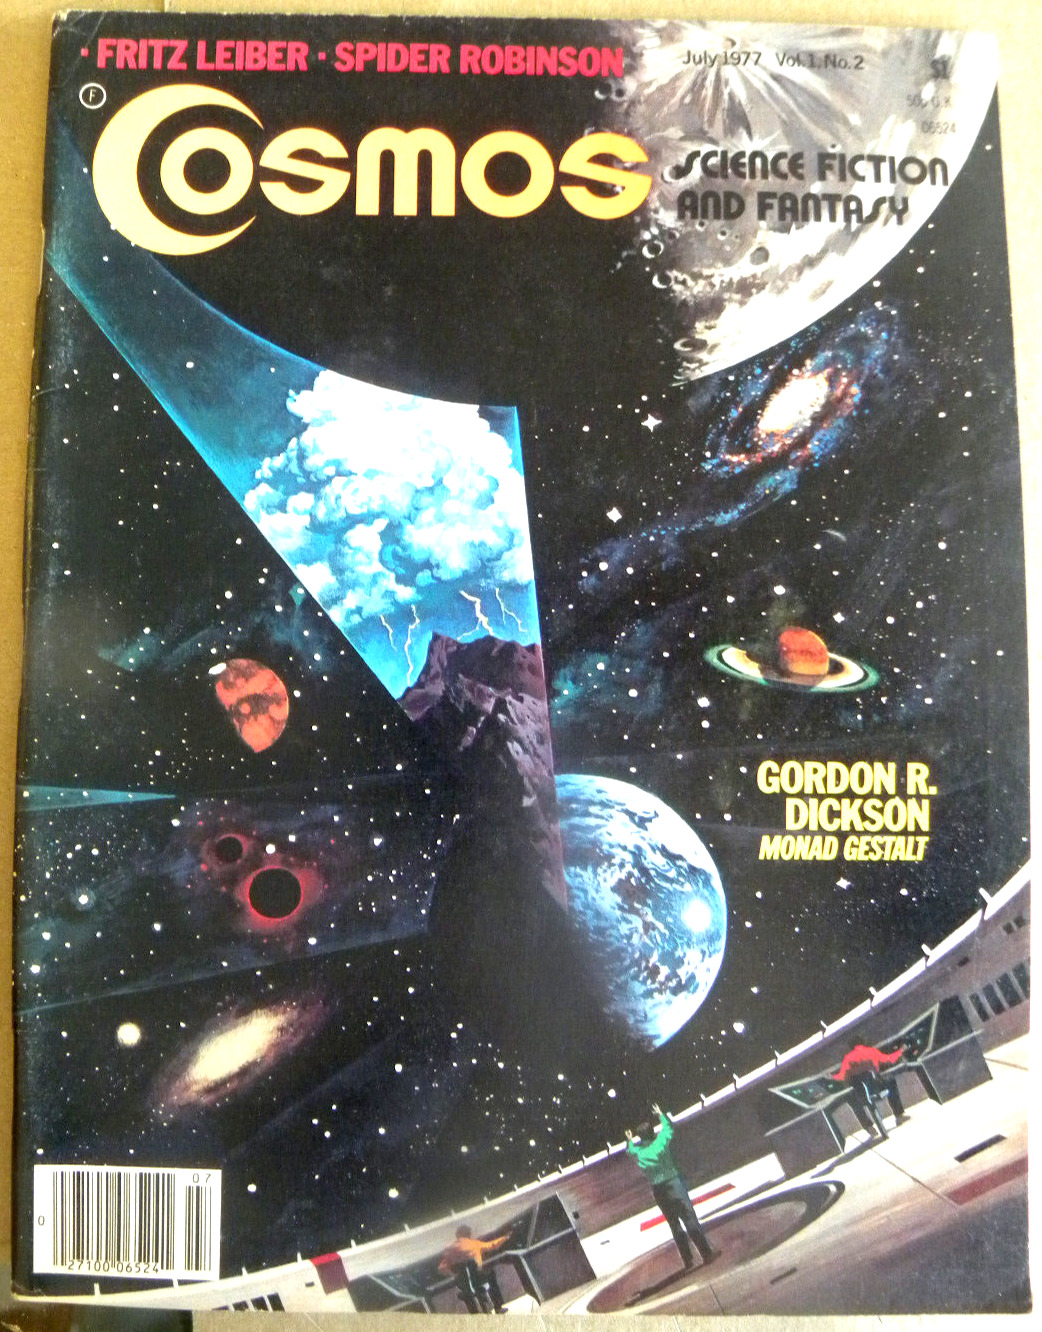 rare fanzine 1977 COSMOS SCIENCE FICTION & Fantasy Vol 1 #2 Fritz Leiber kyl